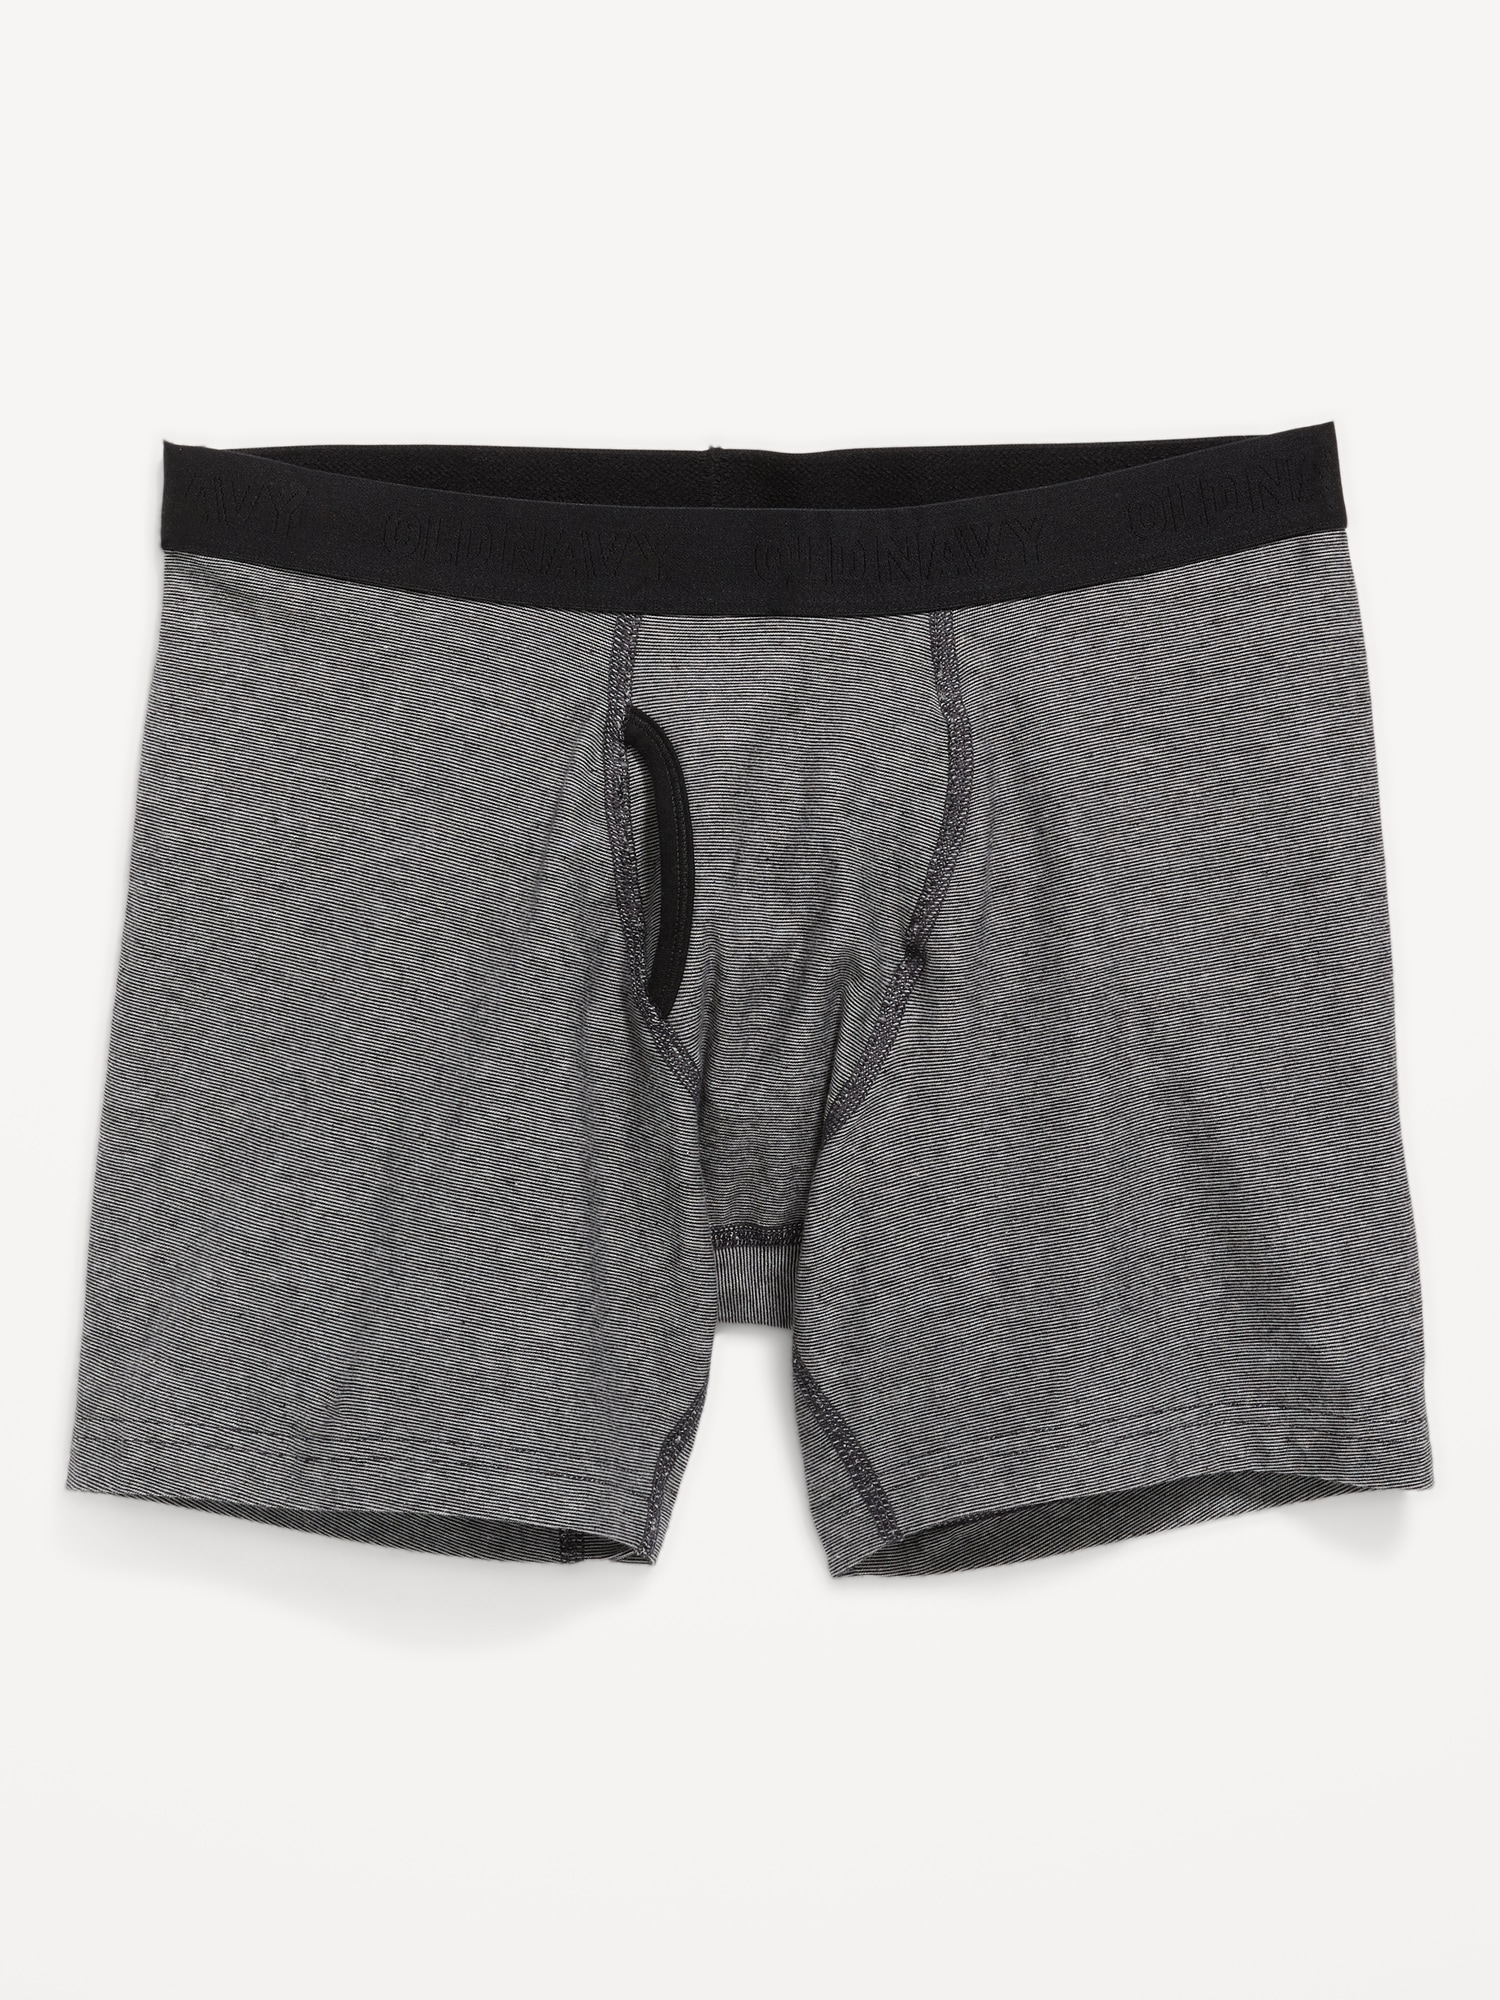 Soft-Washed Built-In Flex Boxer-Brief Underwear 10-Pack --6.25